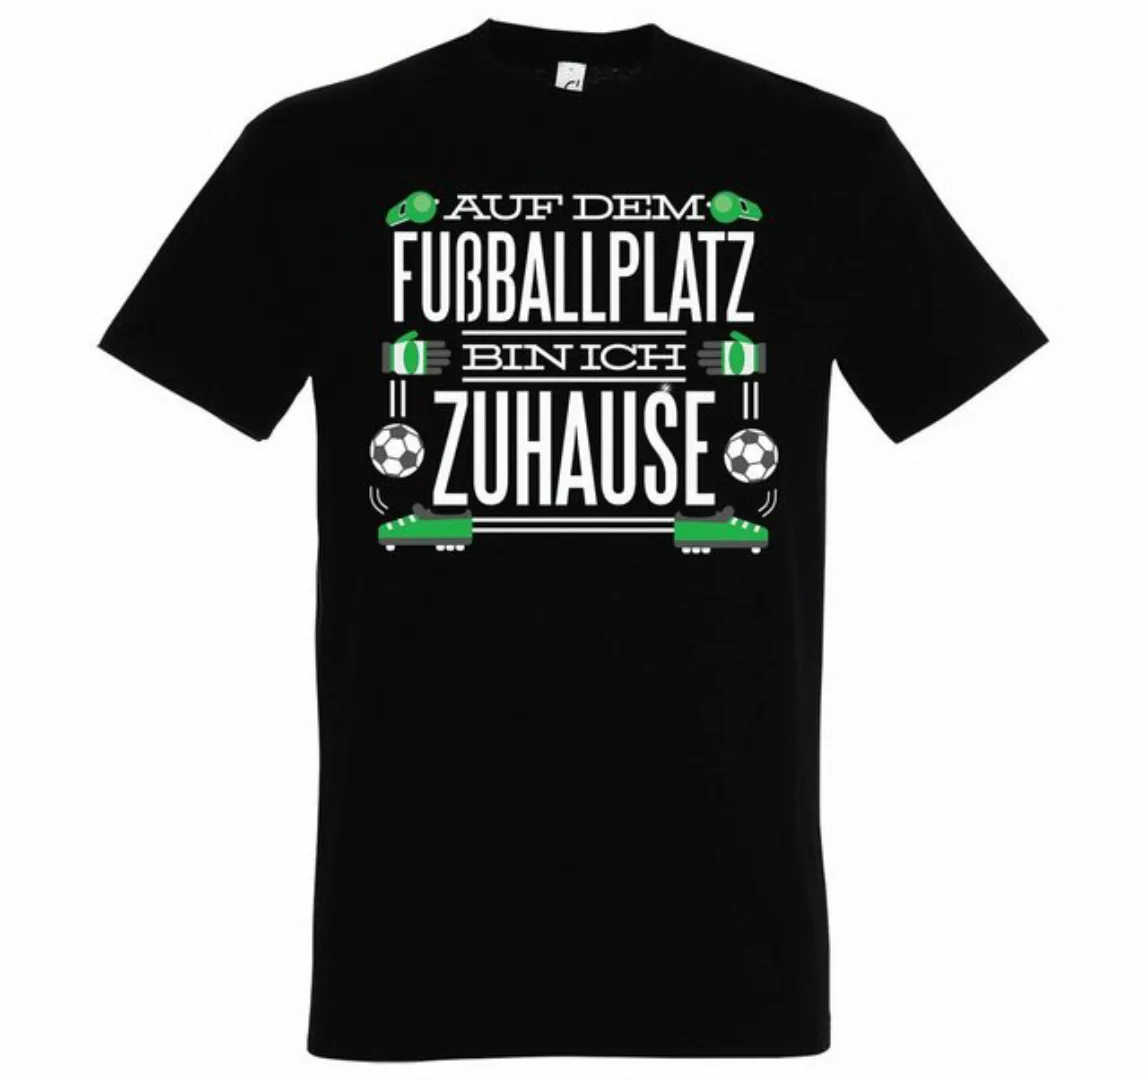 Youth Designz T-Shirt "Auf dem Fußballplatz bin ich Zuhause" Herren T-Shirt günstig online kaufen